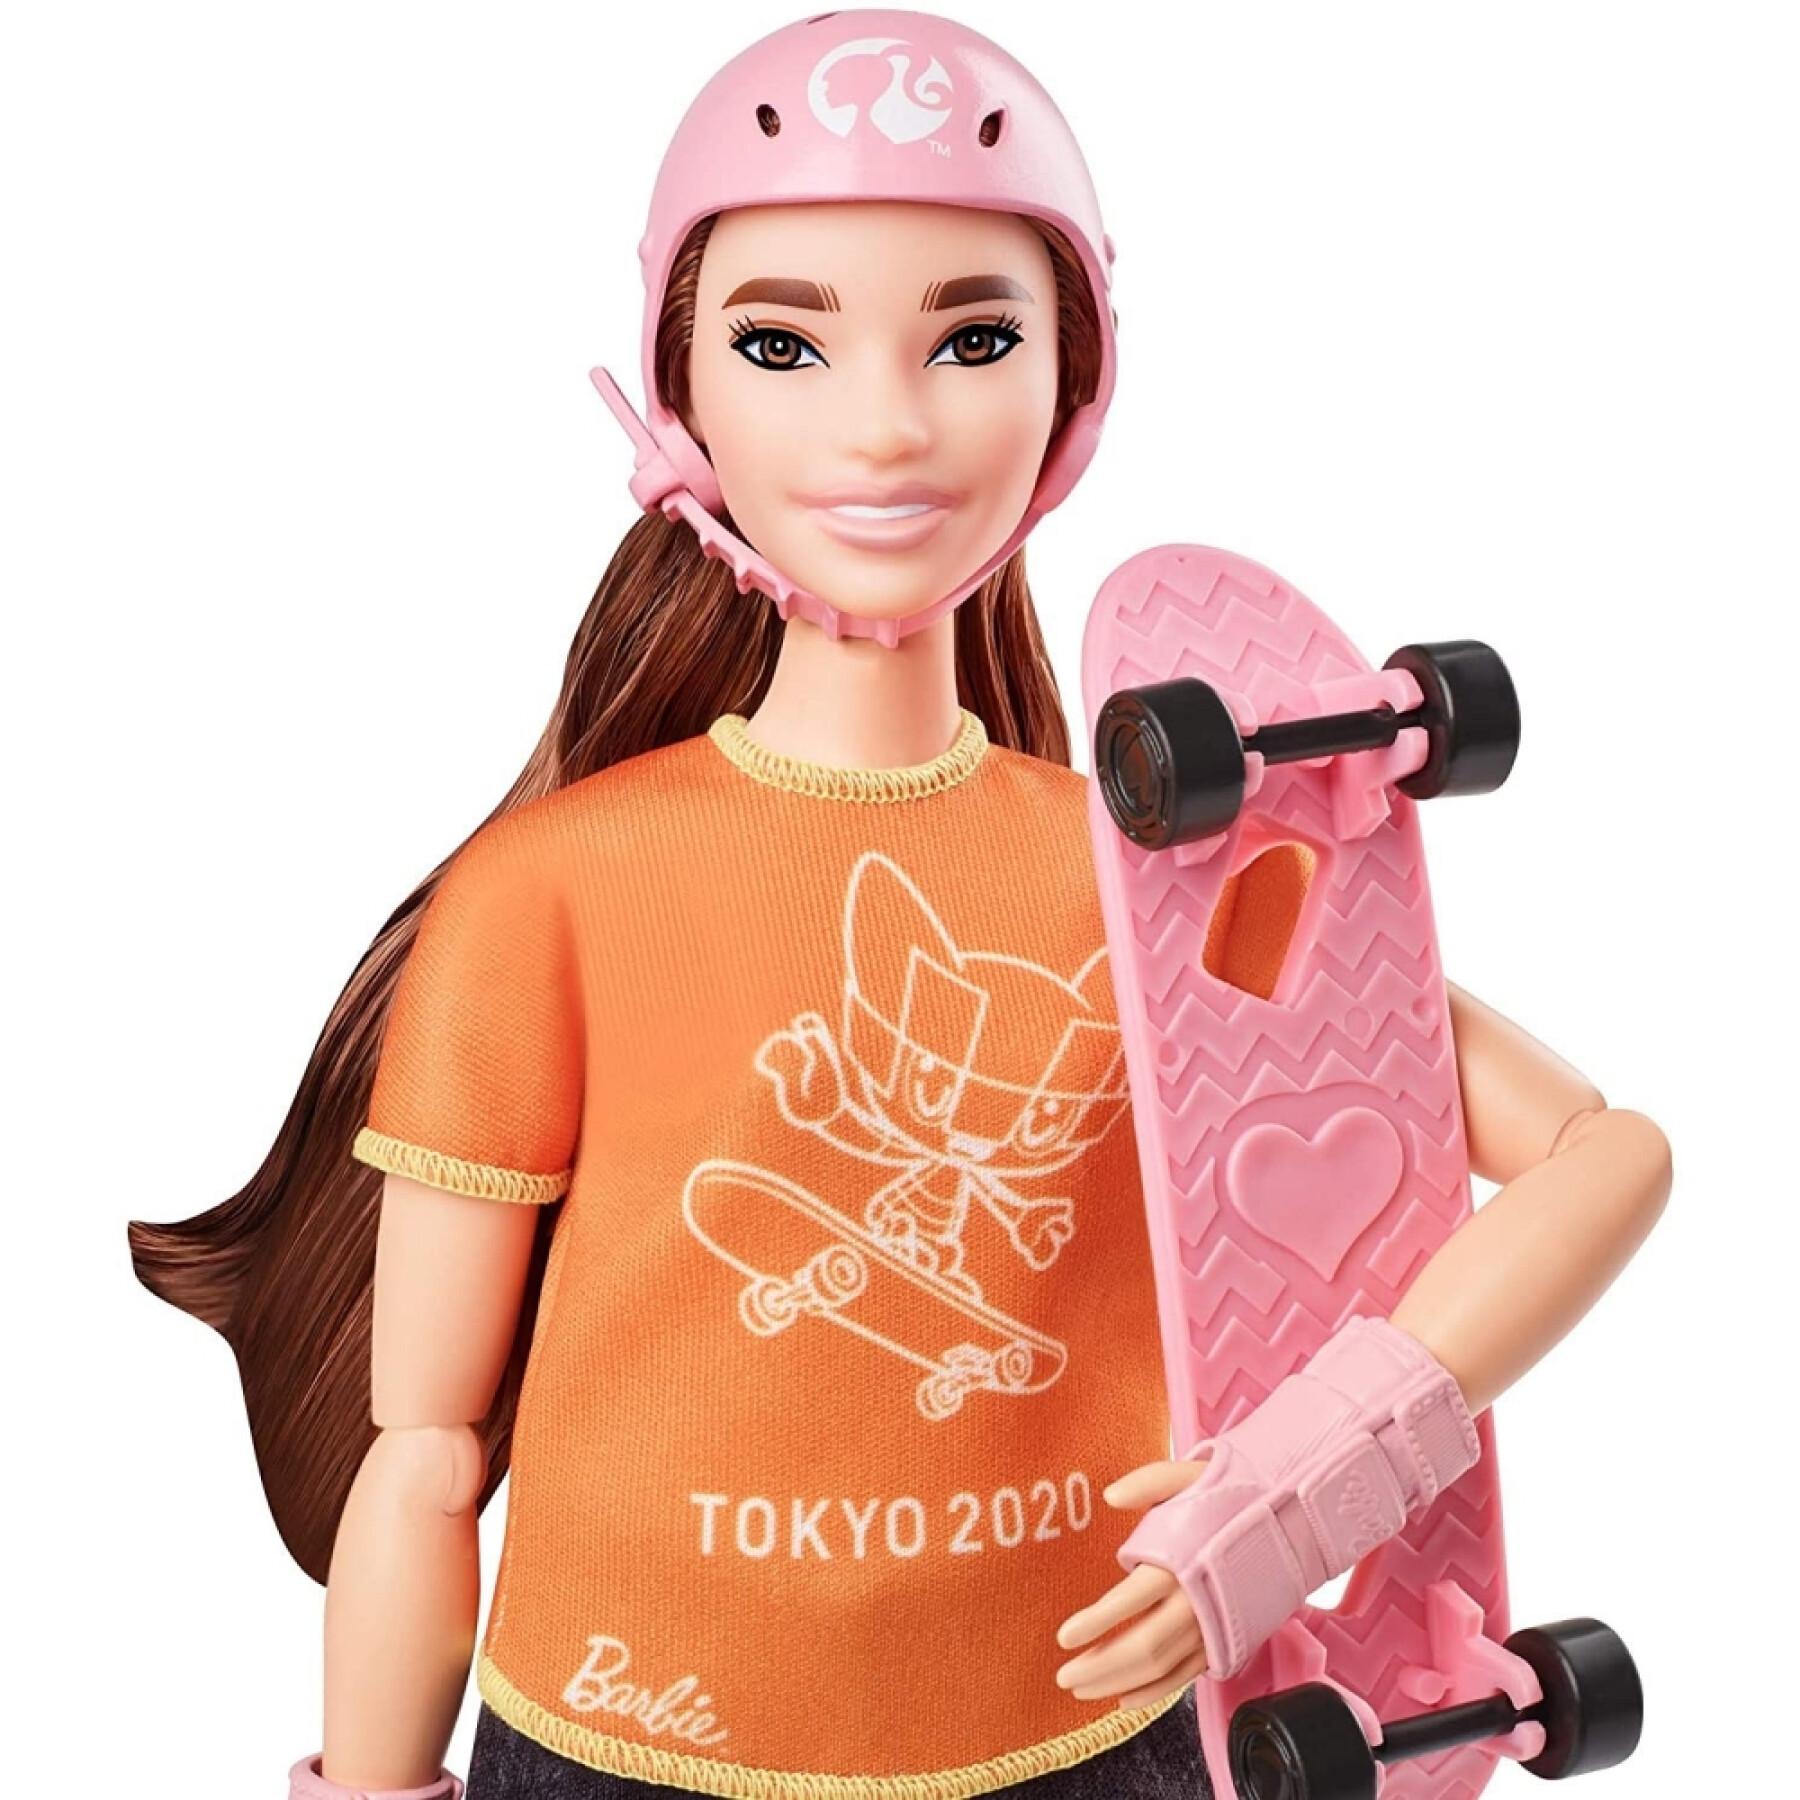 Lalka łyżwiarki olimpijskiej Barbie